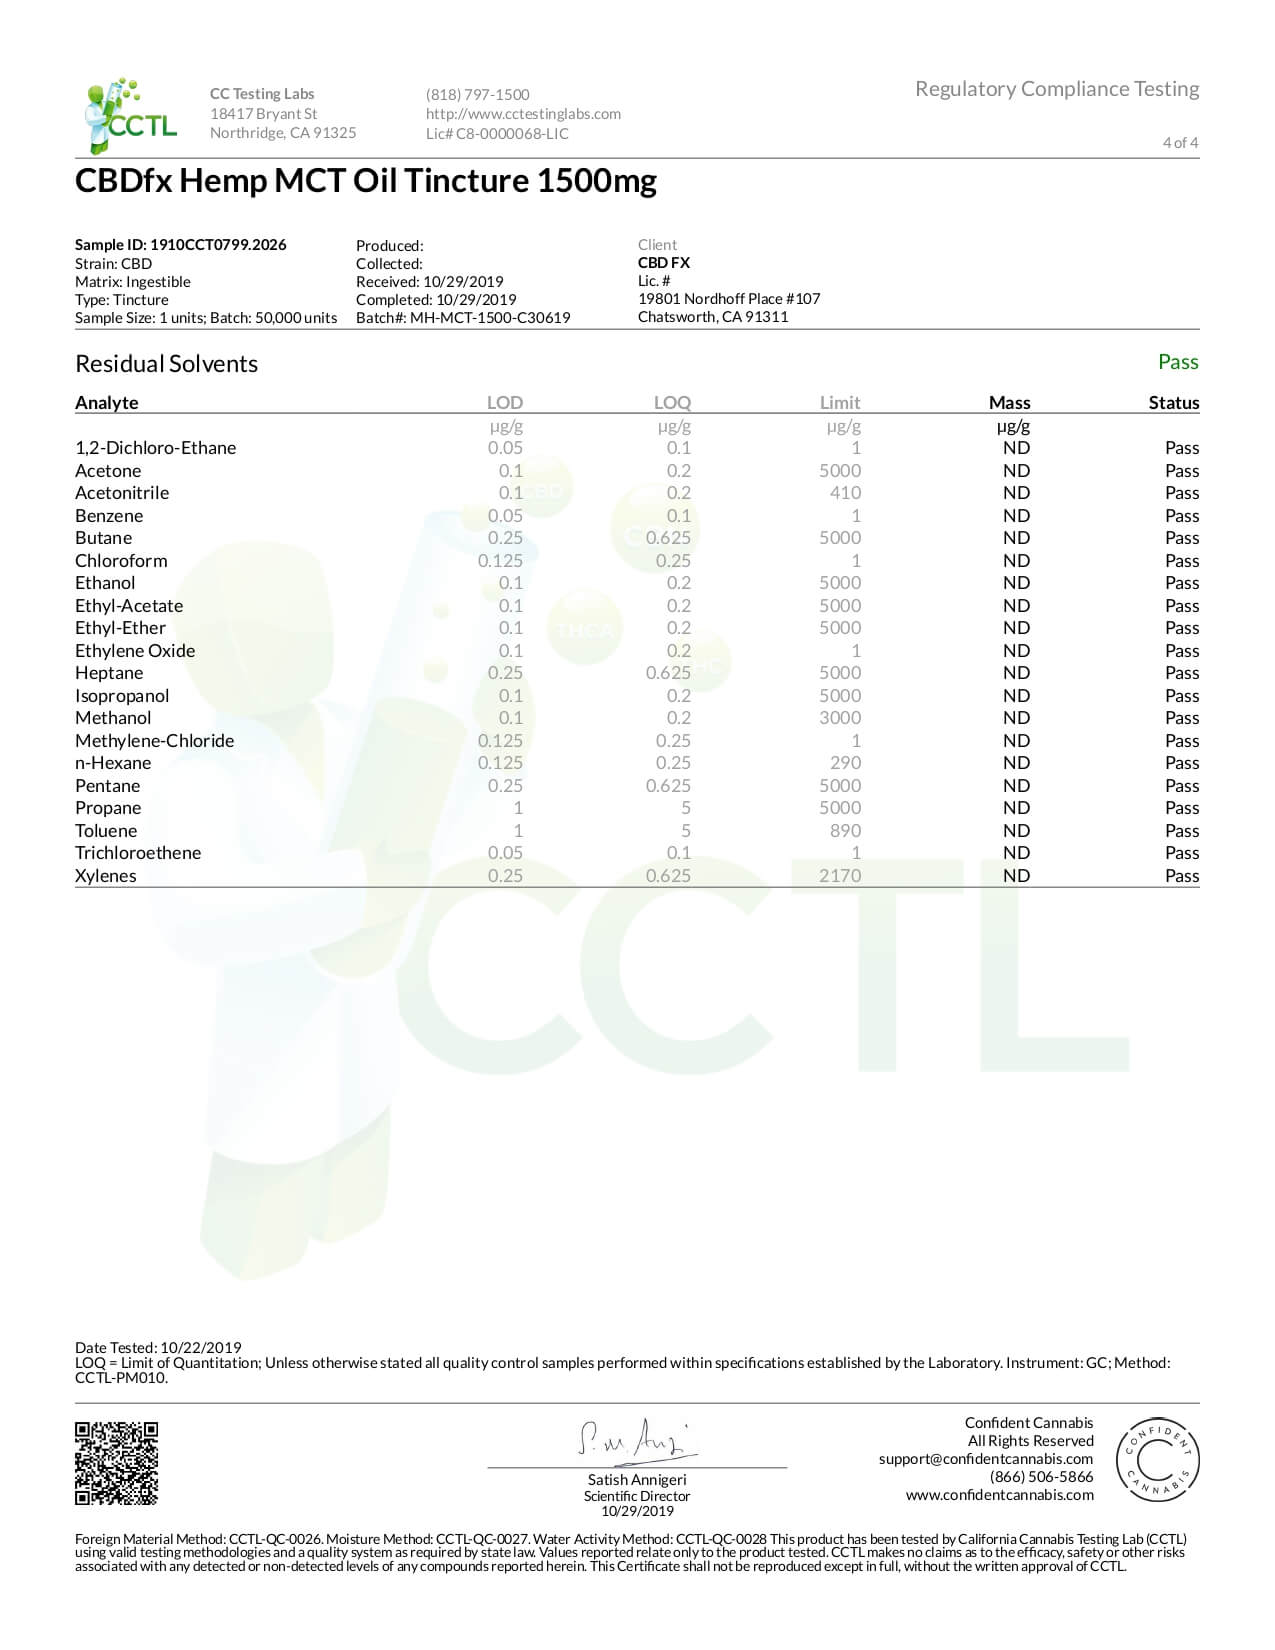 CBDfx CBD Tincture Oil Lab Report Full Spectrum 1500mg